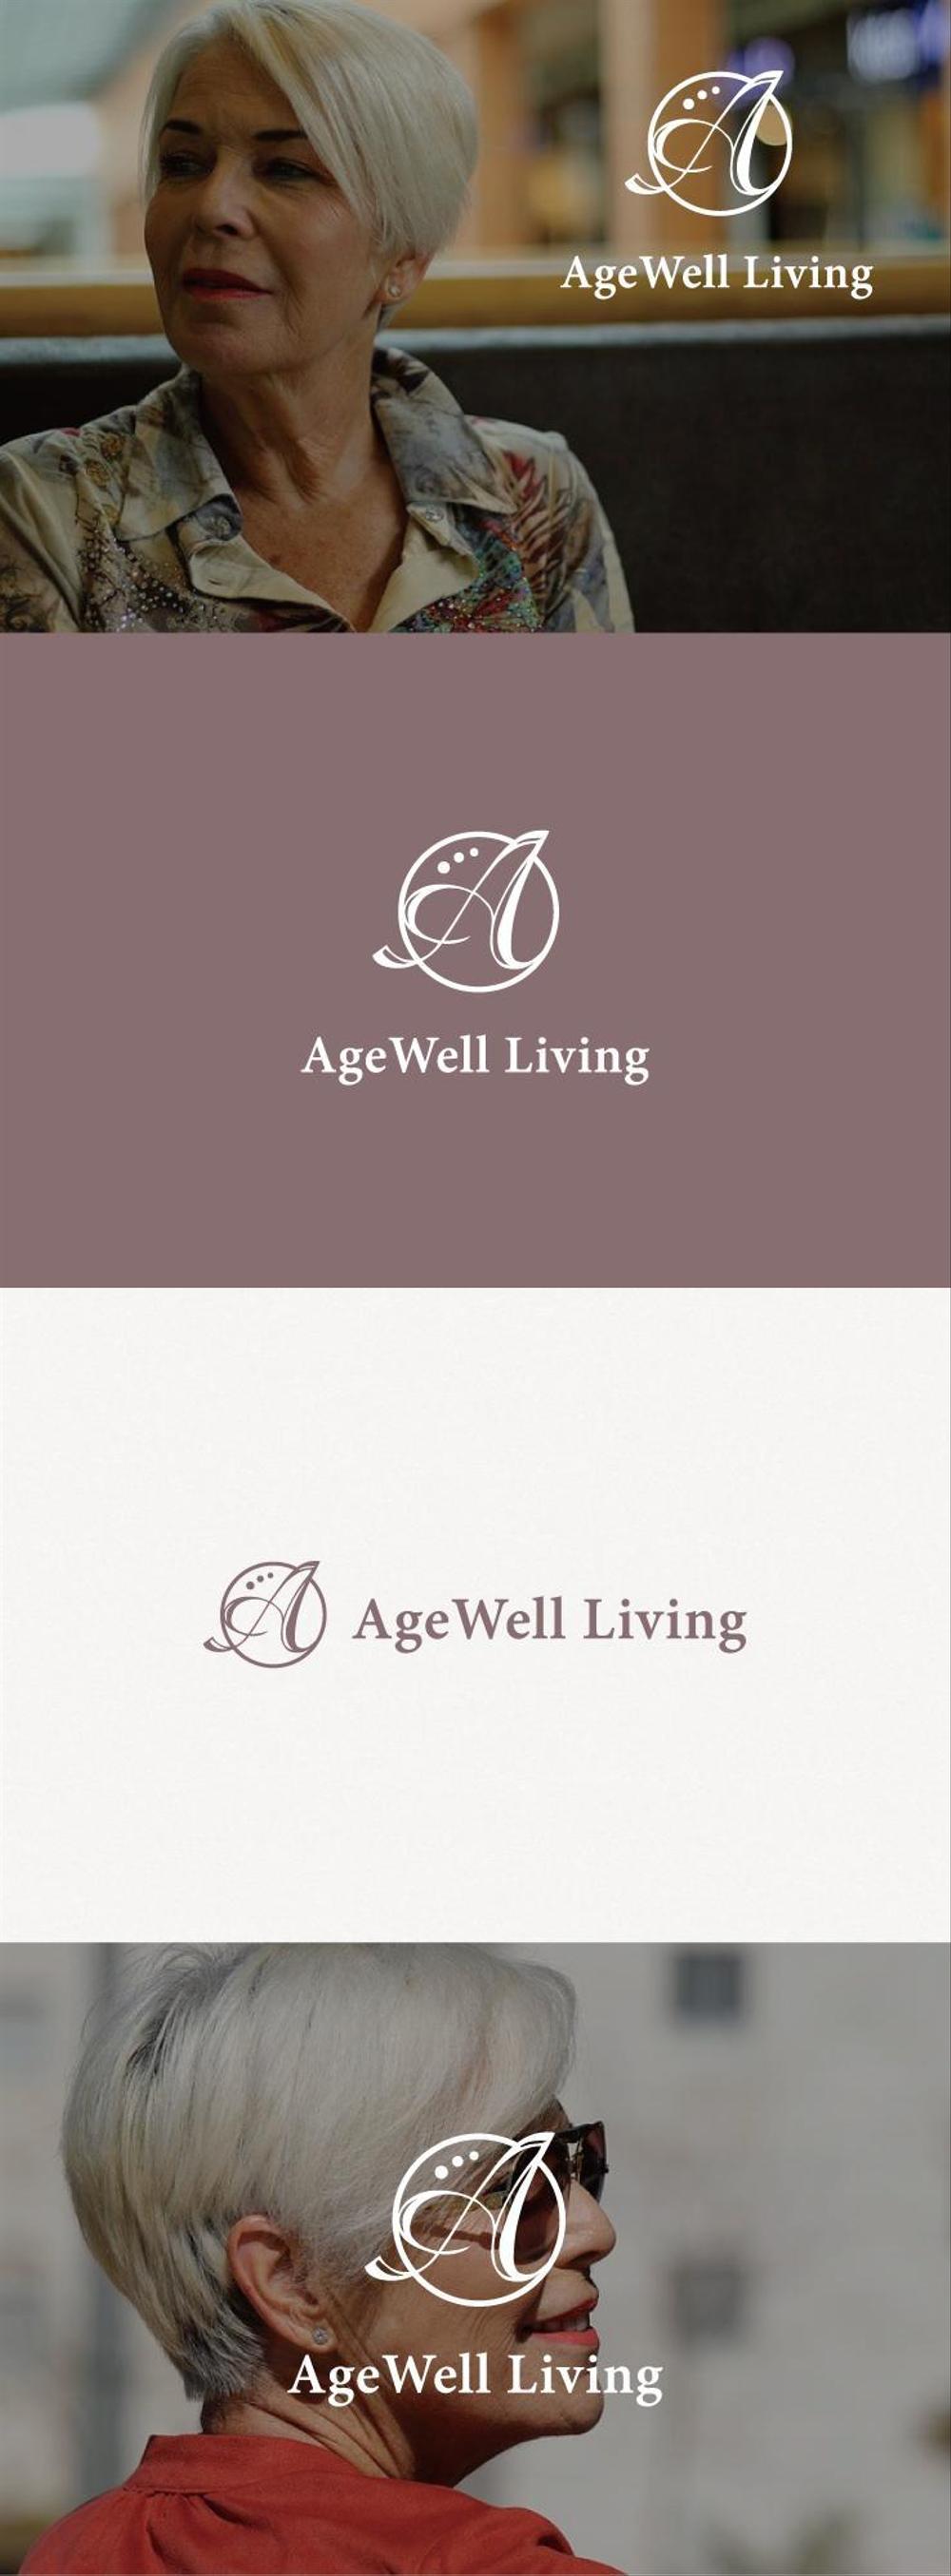 大人の女性向けエイジングライフサービス「AgeWell Living」のロゴ（商標登録予定なし